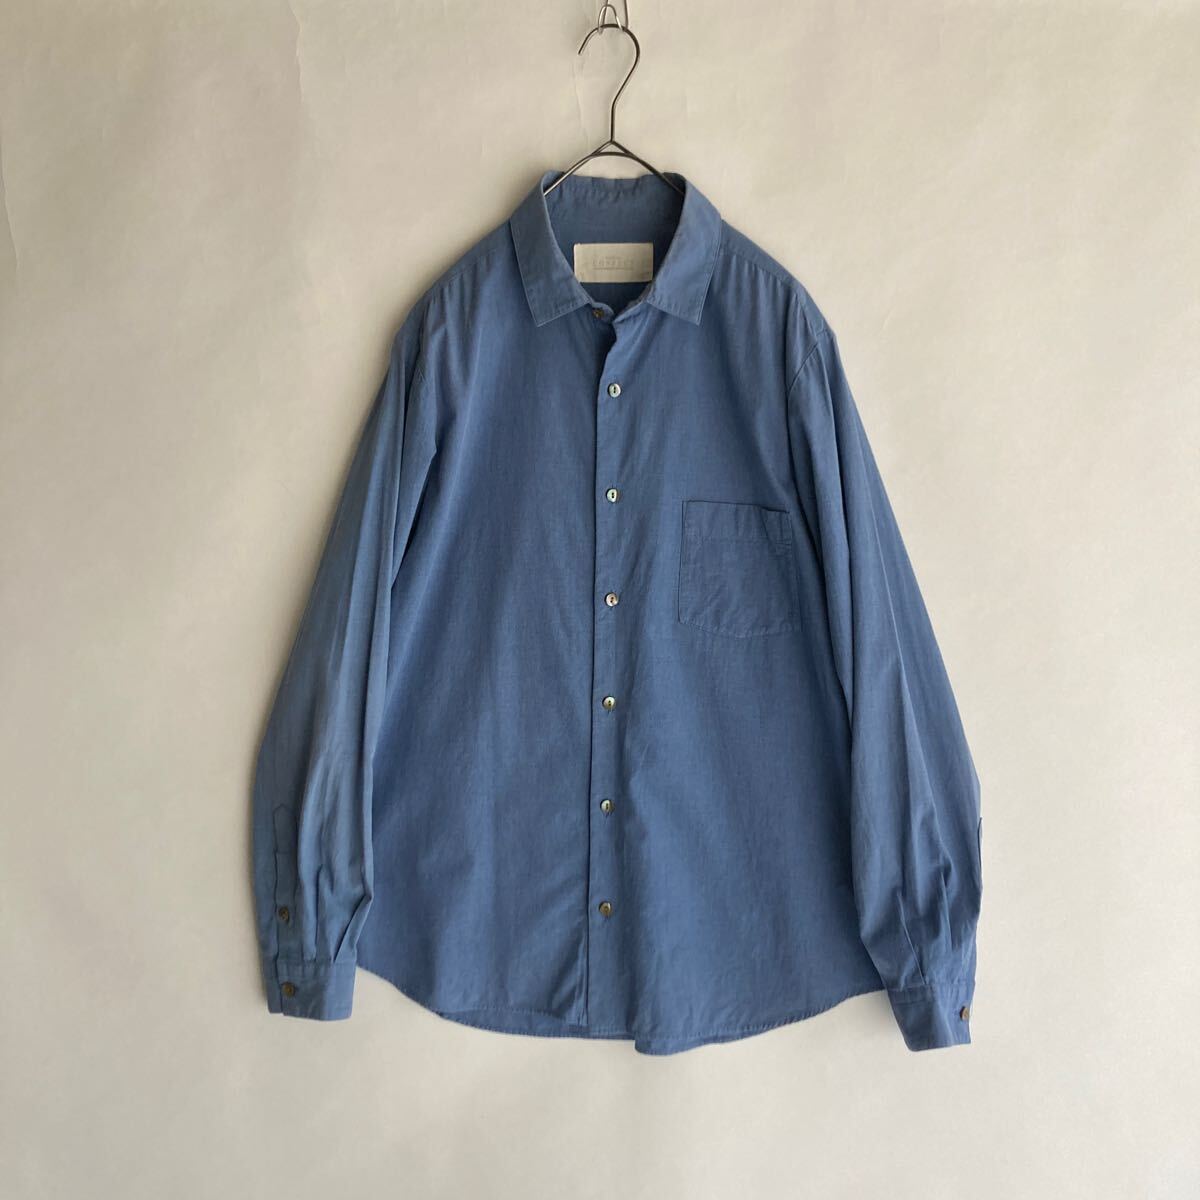 nest Robe CONFECT 日本製 ネストローブコンフェクト ベタシャン風 ベーシック シャツ ややゆったりめ ブルー 無地 size 4 skの画像1